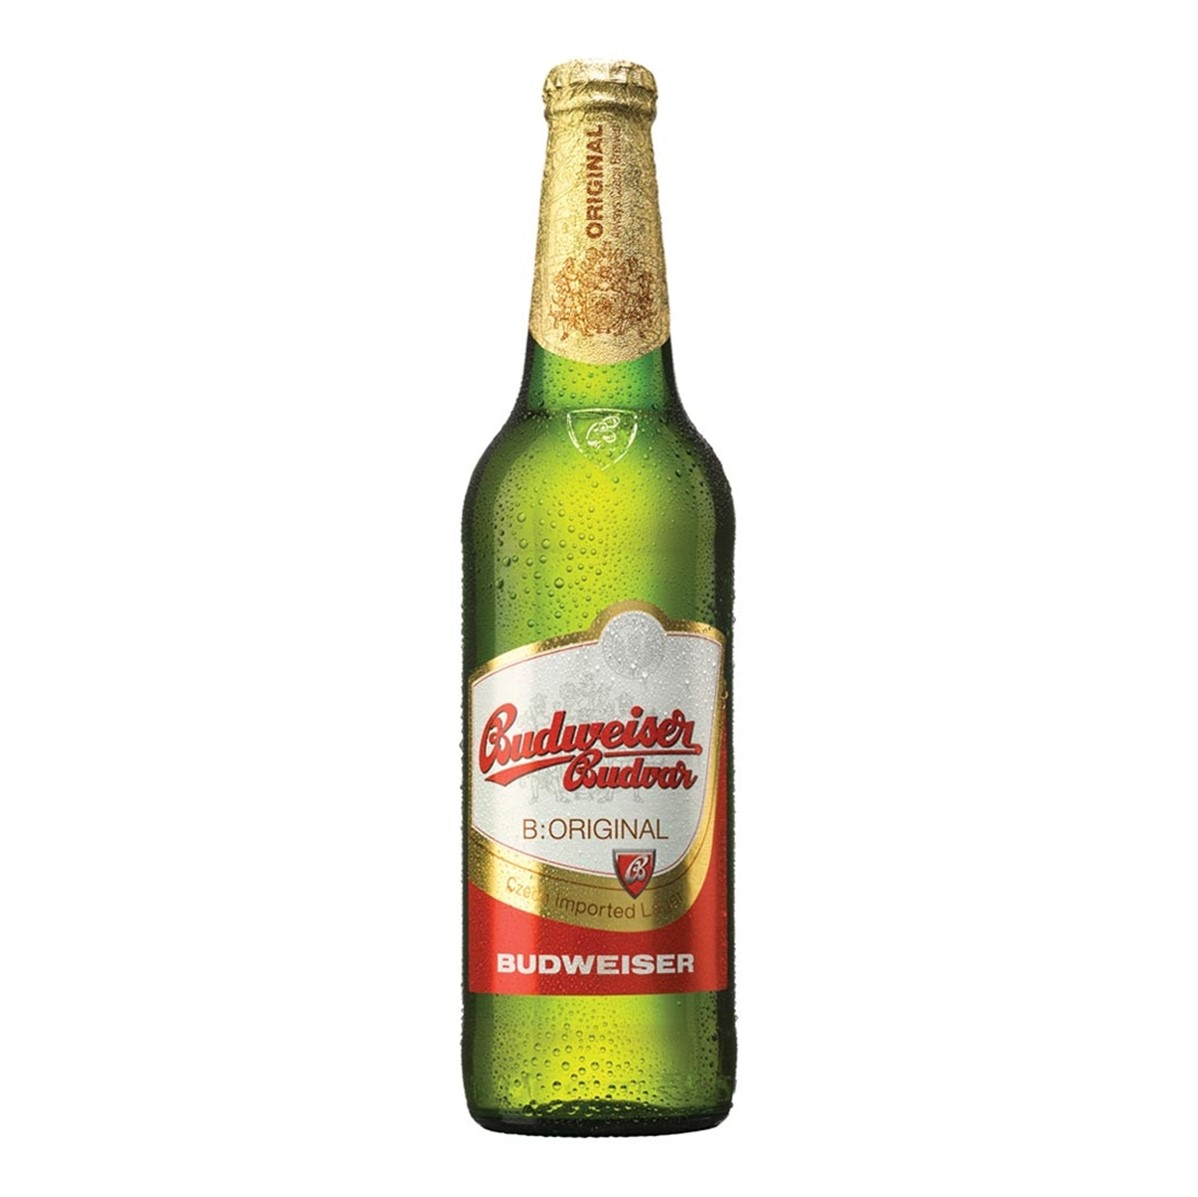 Budweiser Budvar Original Czech Lager - 24x330ml bottles